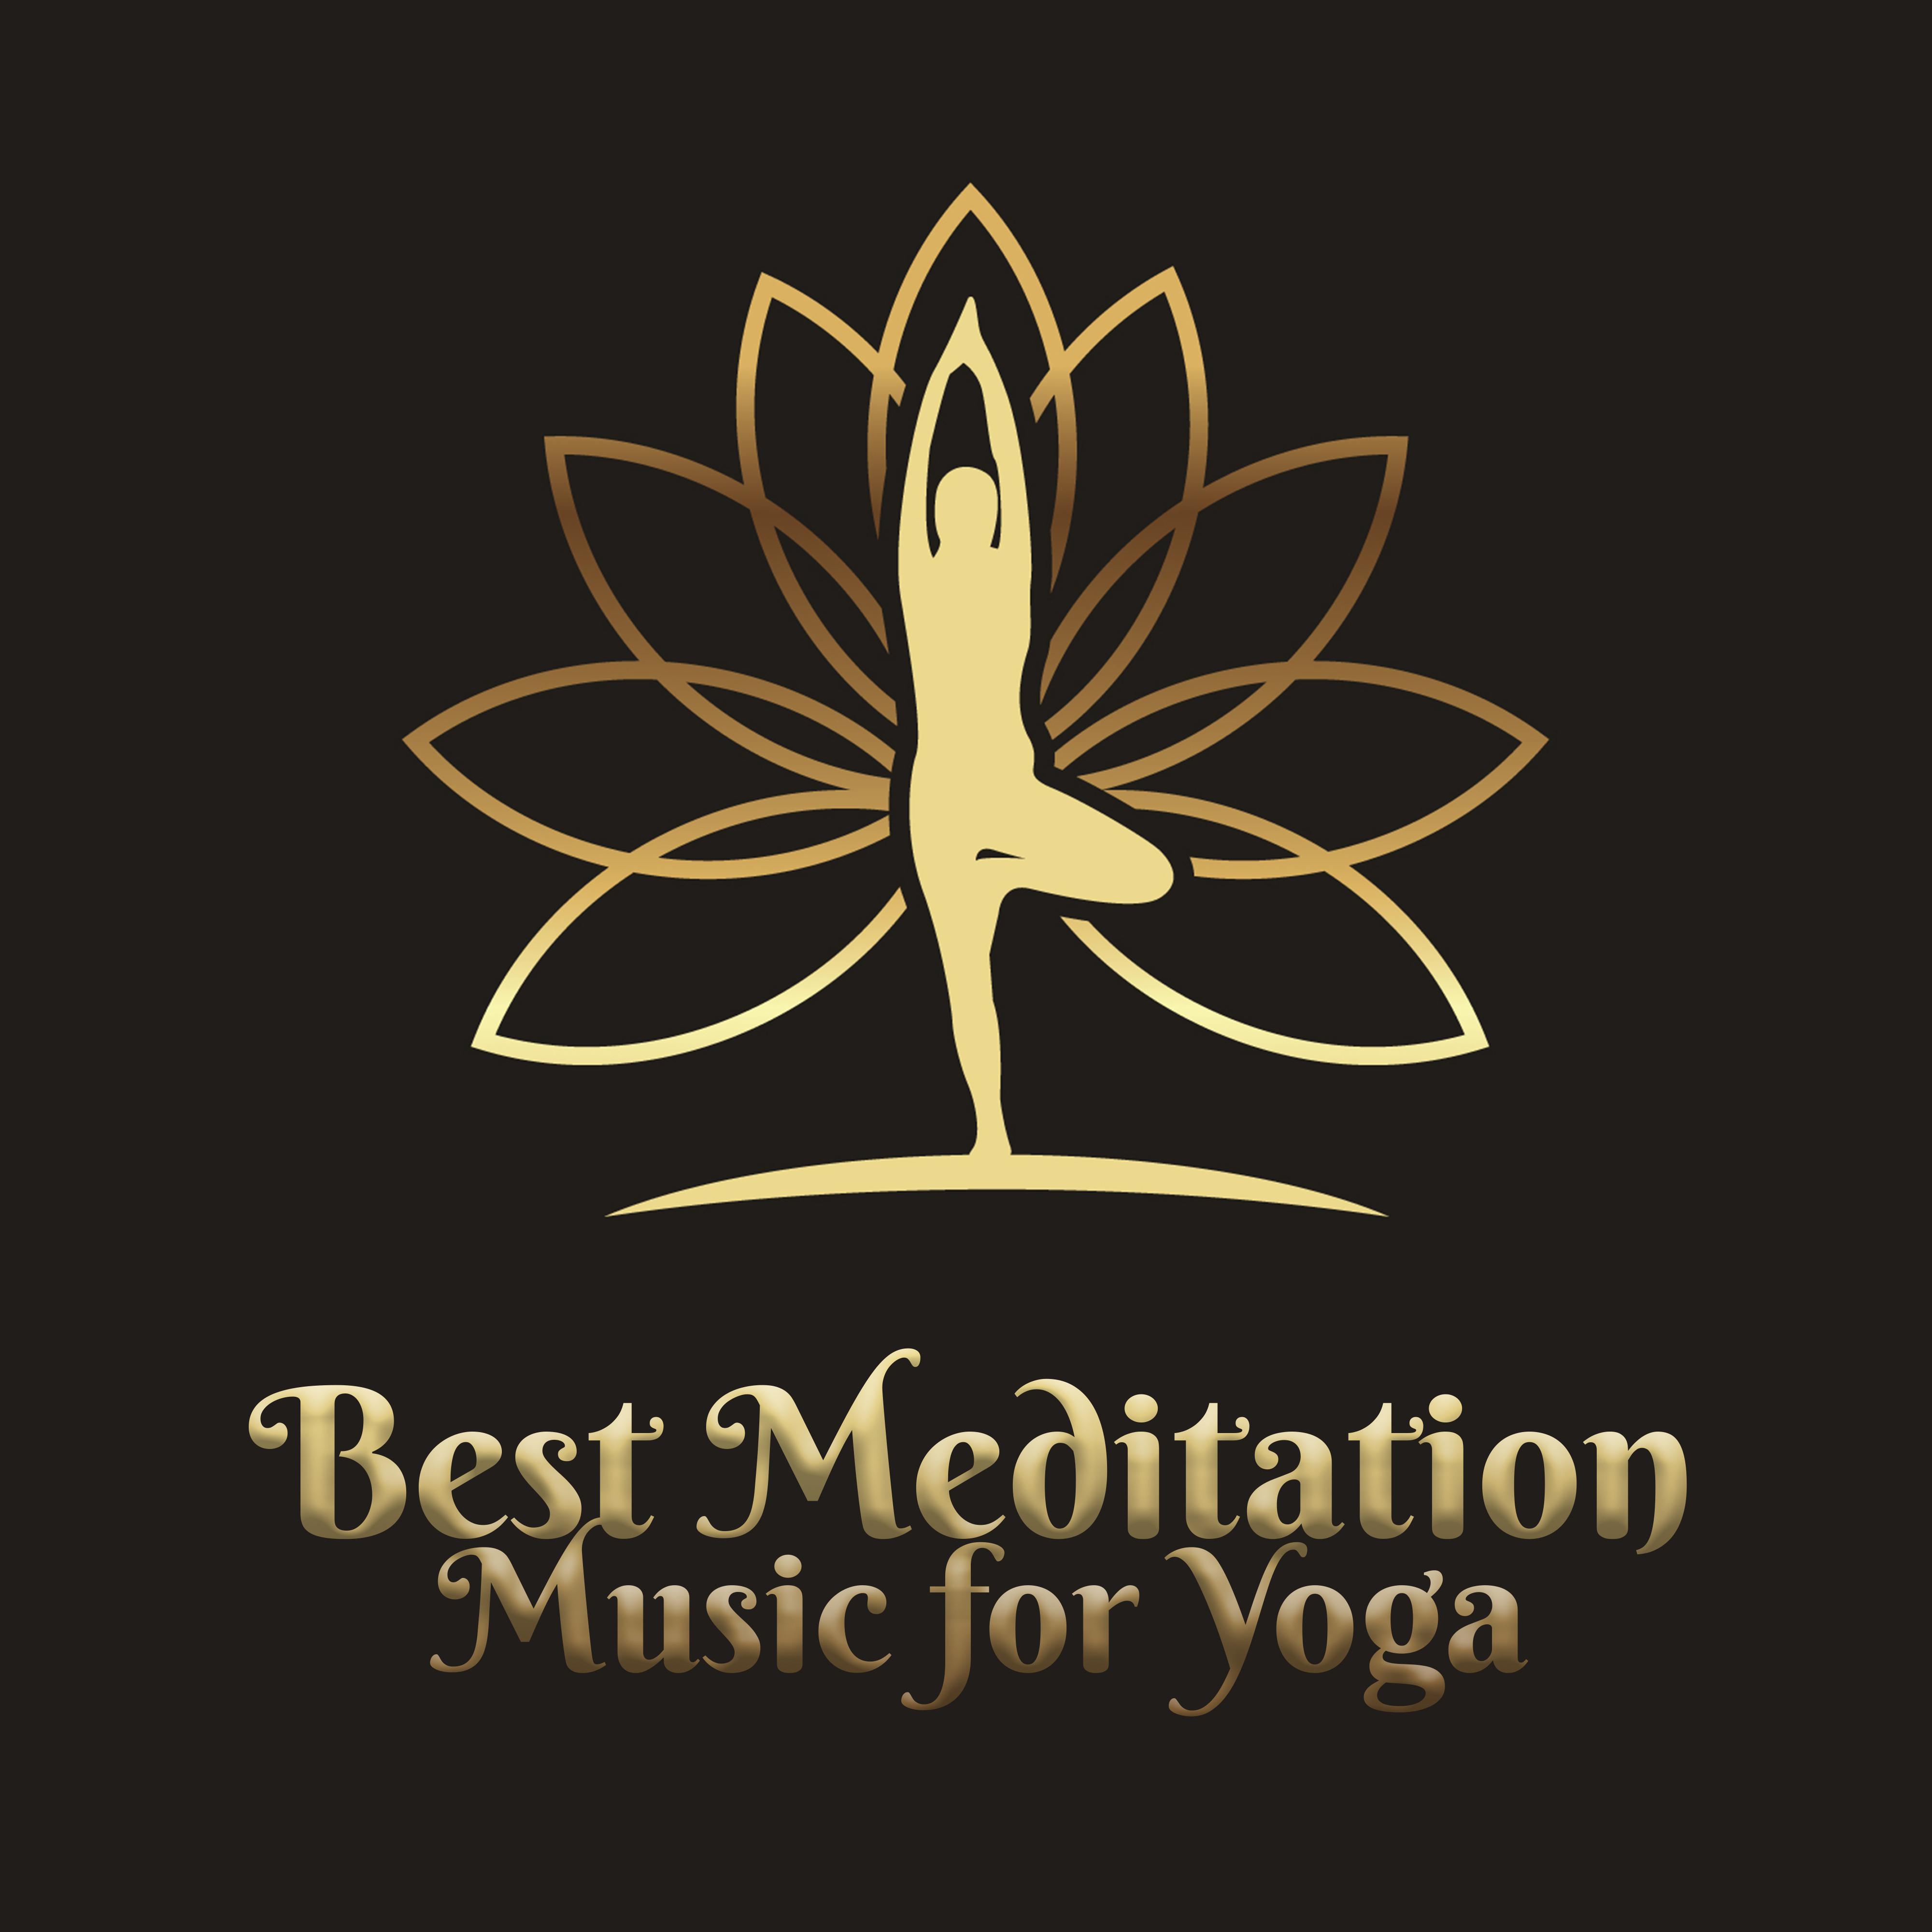 Best Meditation Music for Yoga